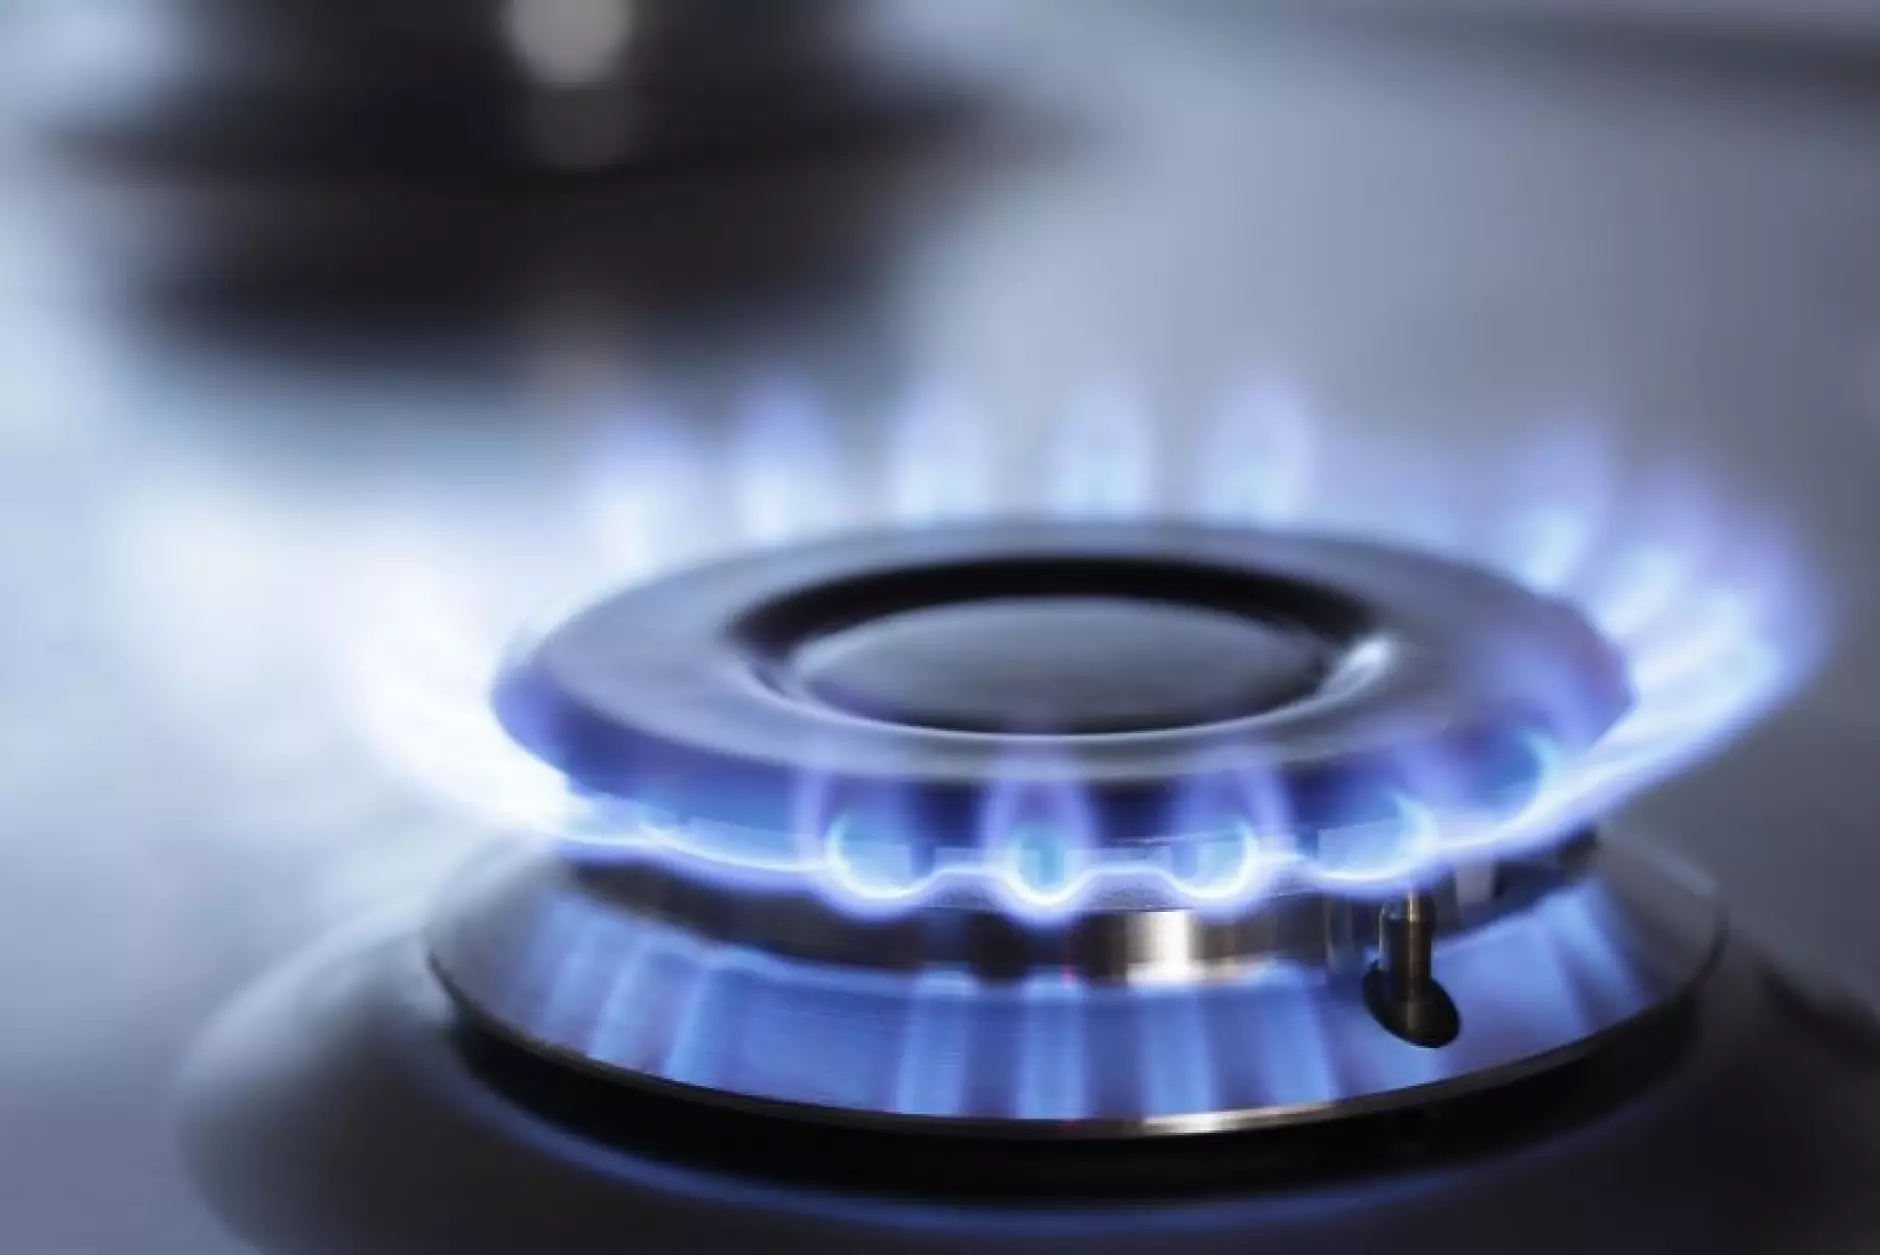 Борисов поиска разследване за газовите доставки. БСП - подновяване на преговорите с Газпром